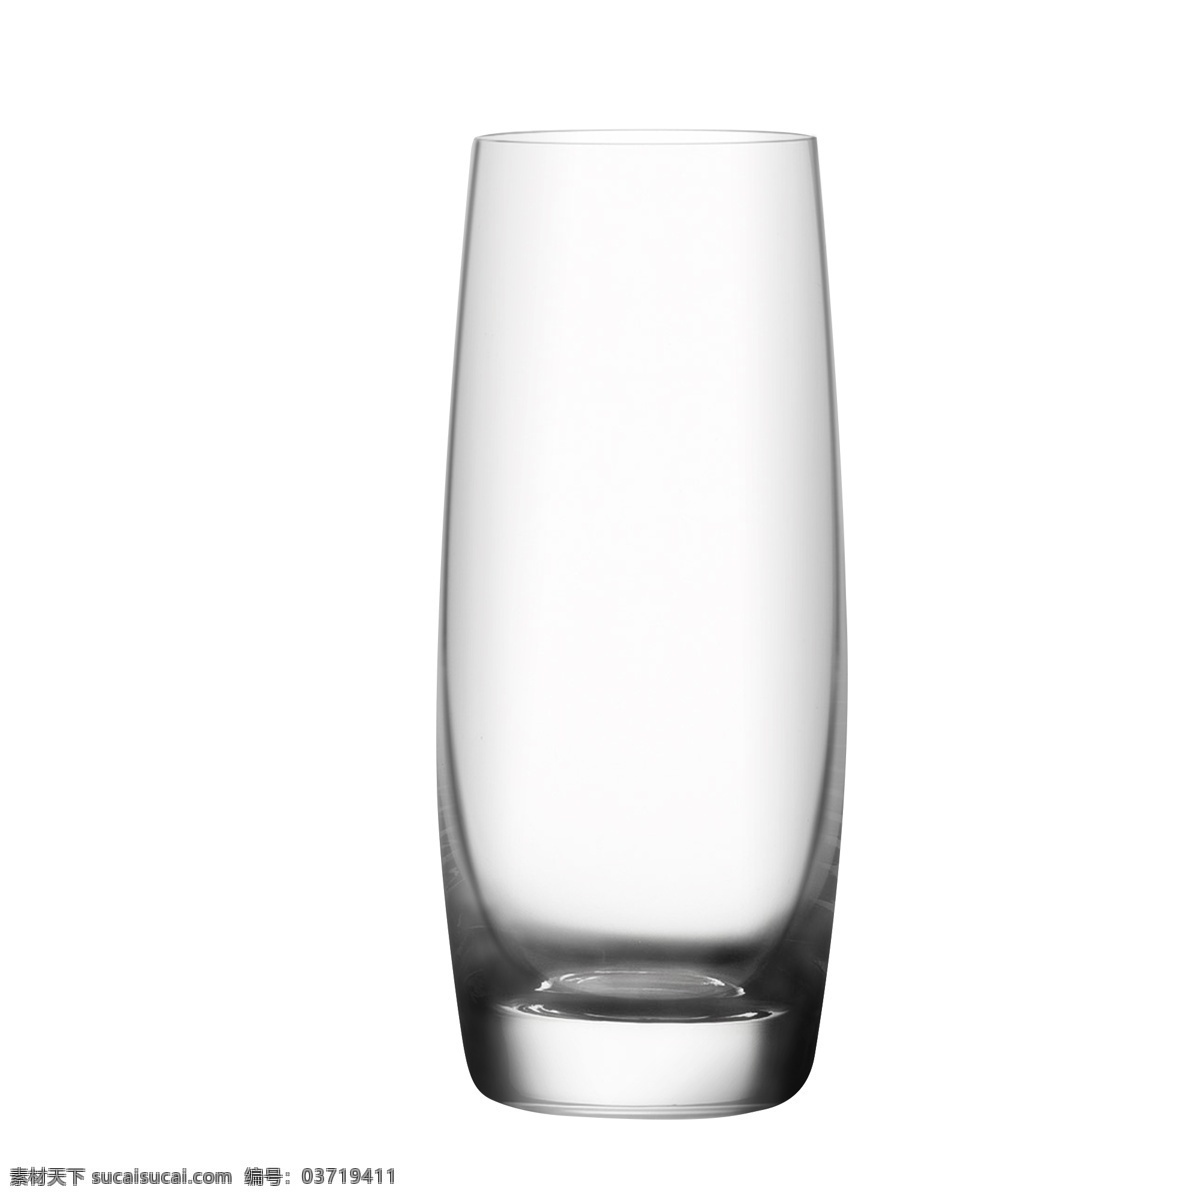 酒杯 实物 果汁 杯 海波 玻璃 酒杯实物 果汁杯 海波杯 玻璃酒杯 高球杯 平底大玻璃杯 酒吧用杯 透明精修杯子